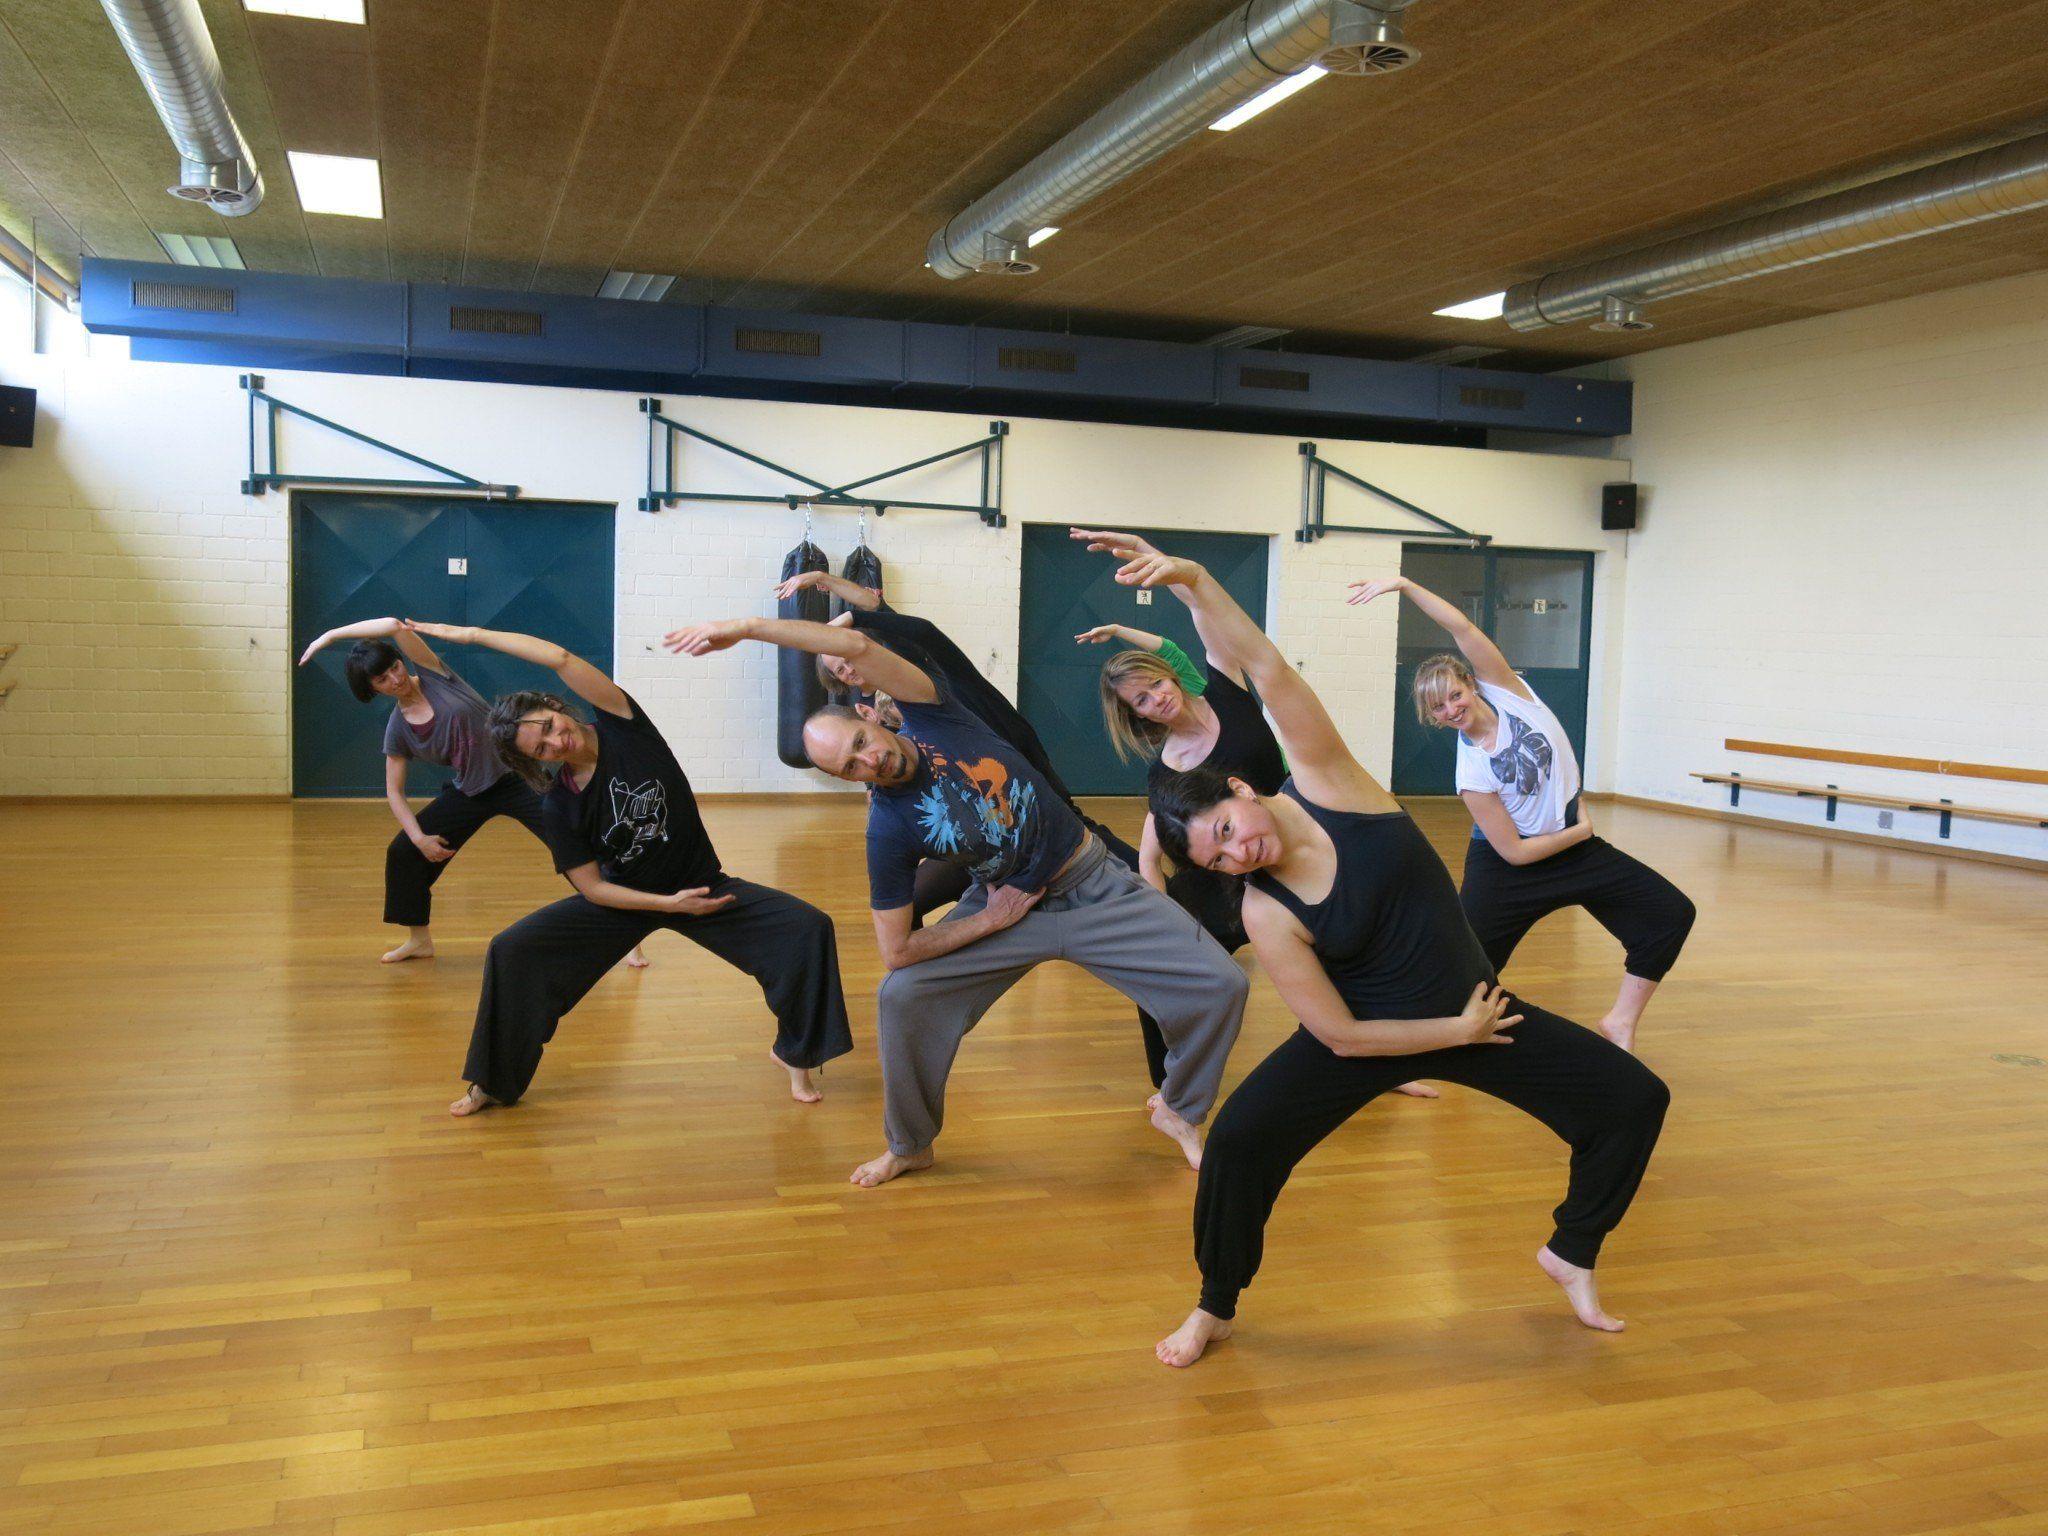 Die Tänzer und Tänzerinnen zeigen in den Trainingsstunden vollen Einsatz